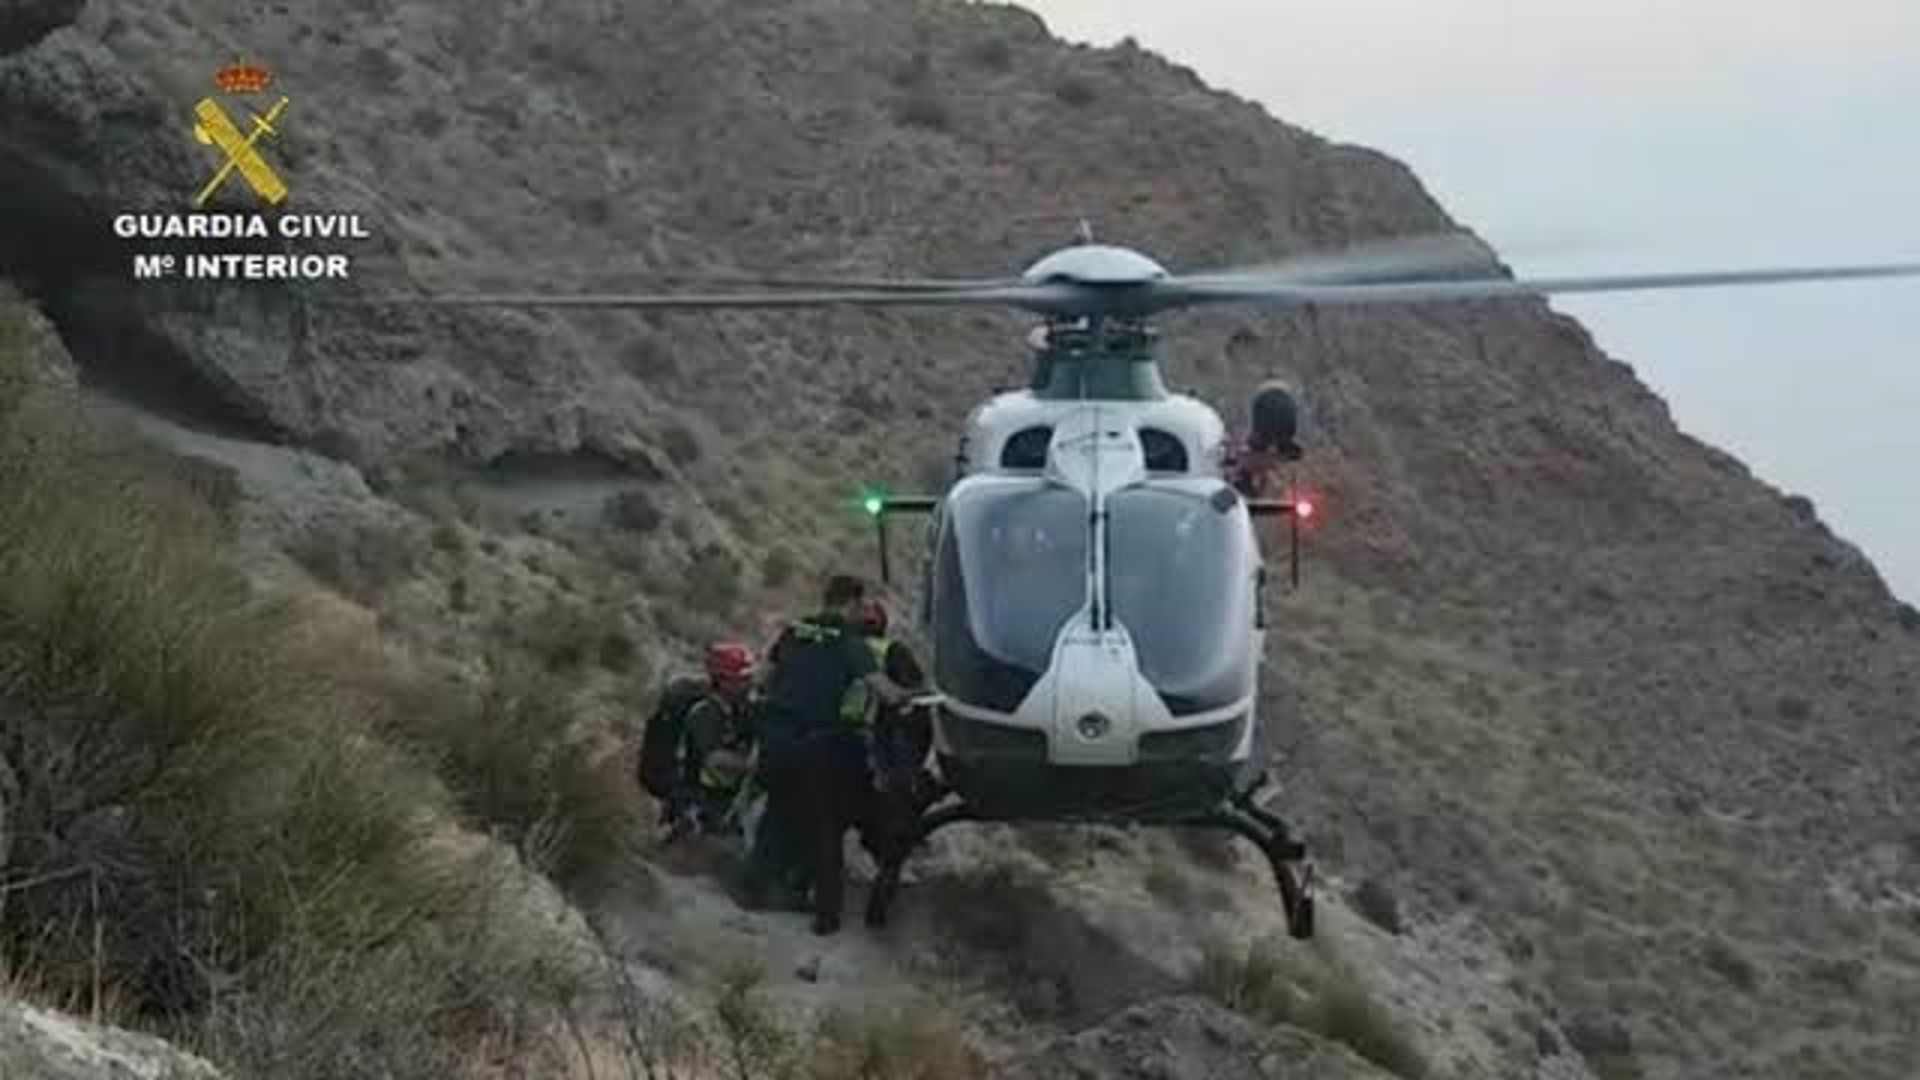 La Guardia Civil realiza tres rescates en montaña en un solo día en la provincia